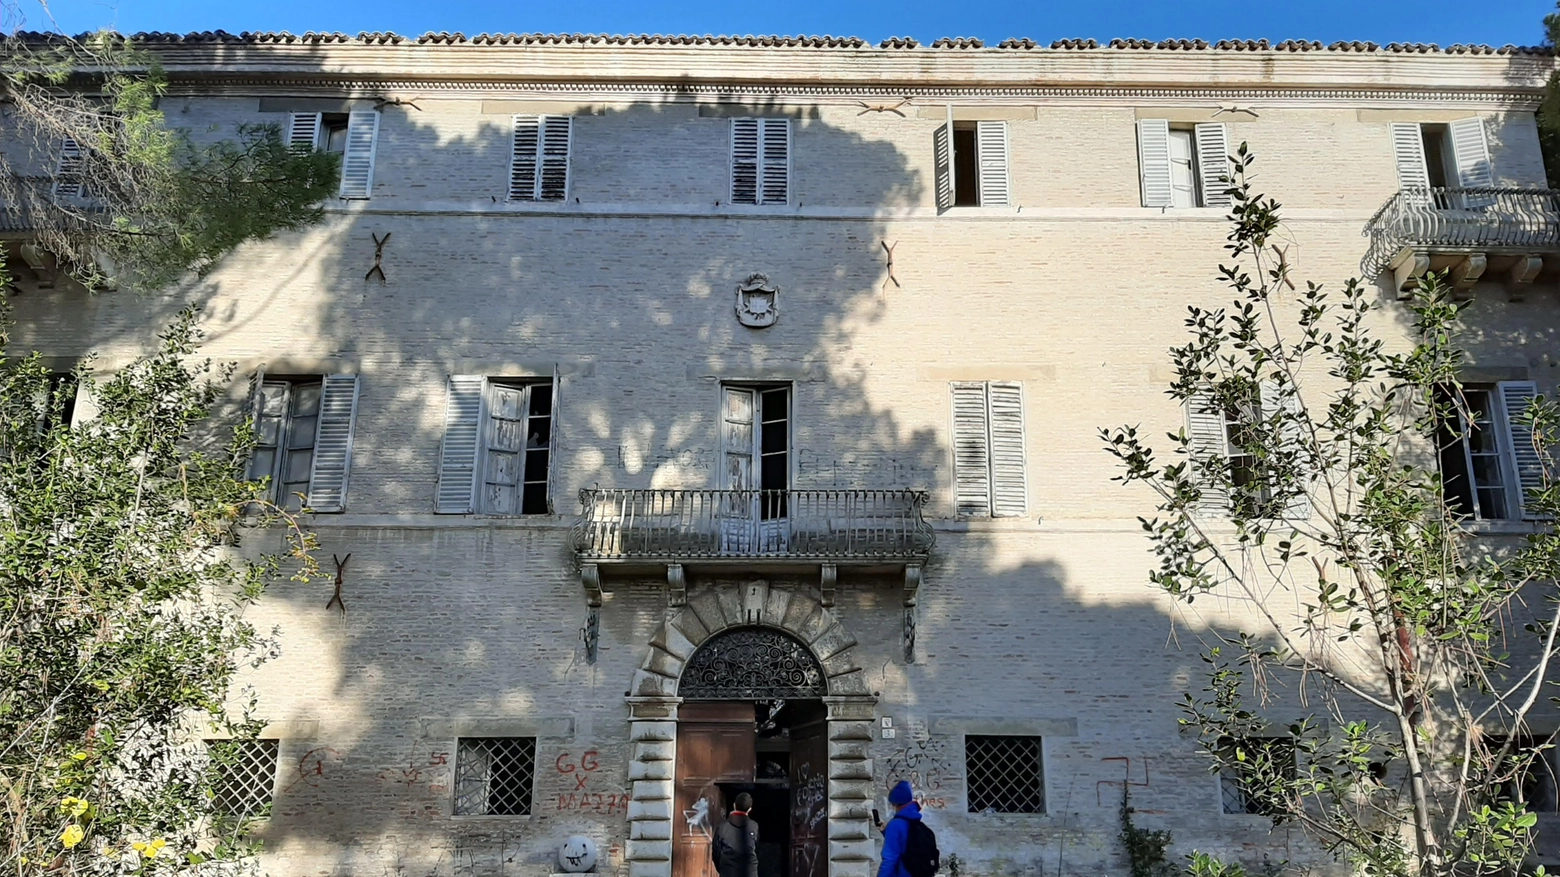 Villa Mastai di Bellegarde in mano ai vandali